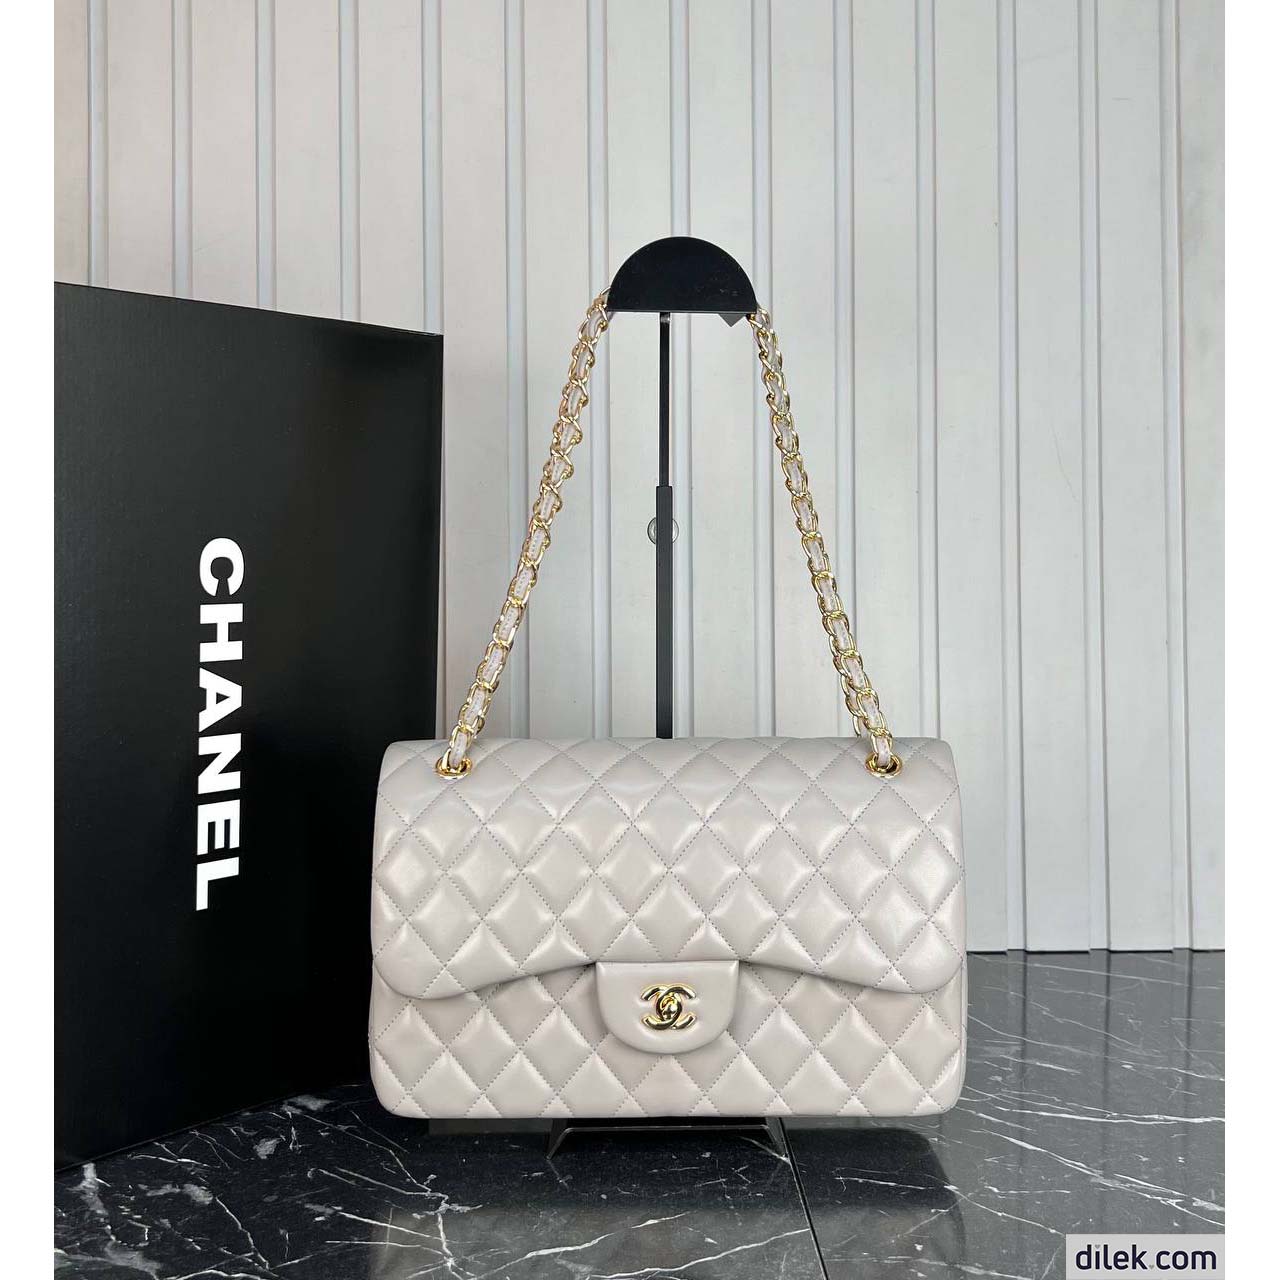 Chanel Classic 3.55 Flap Bag